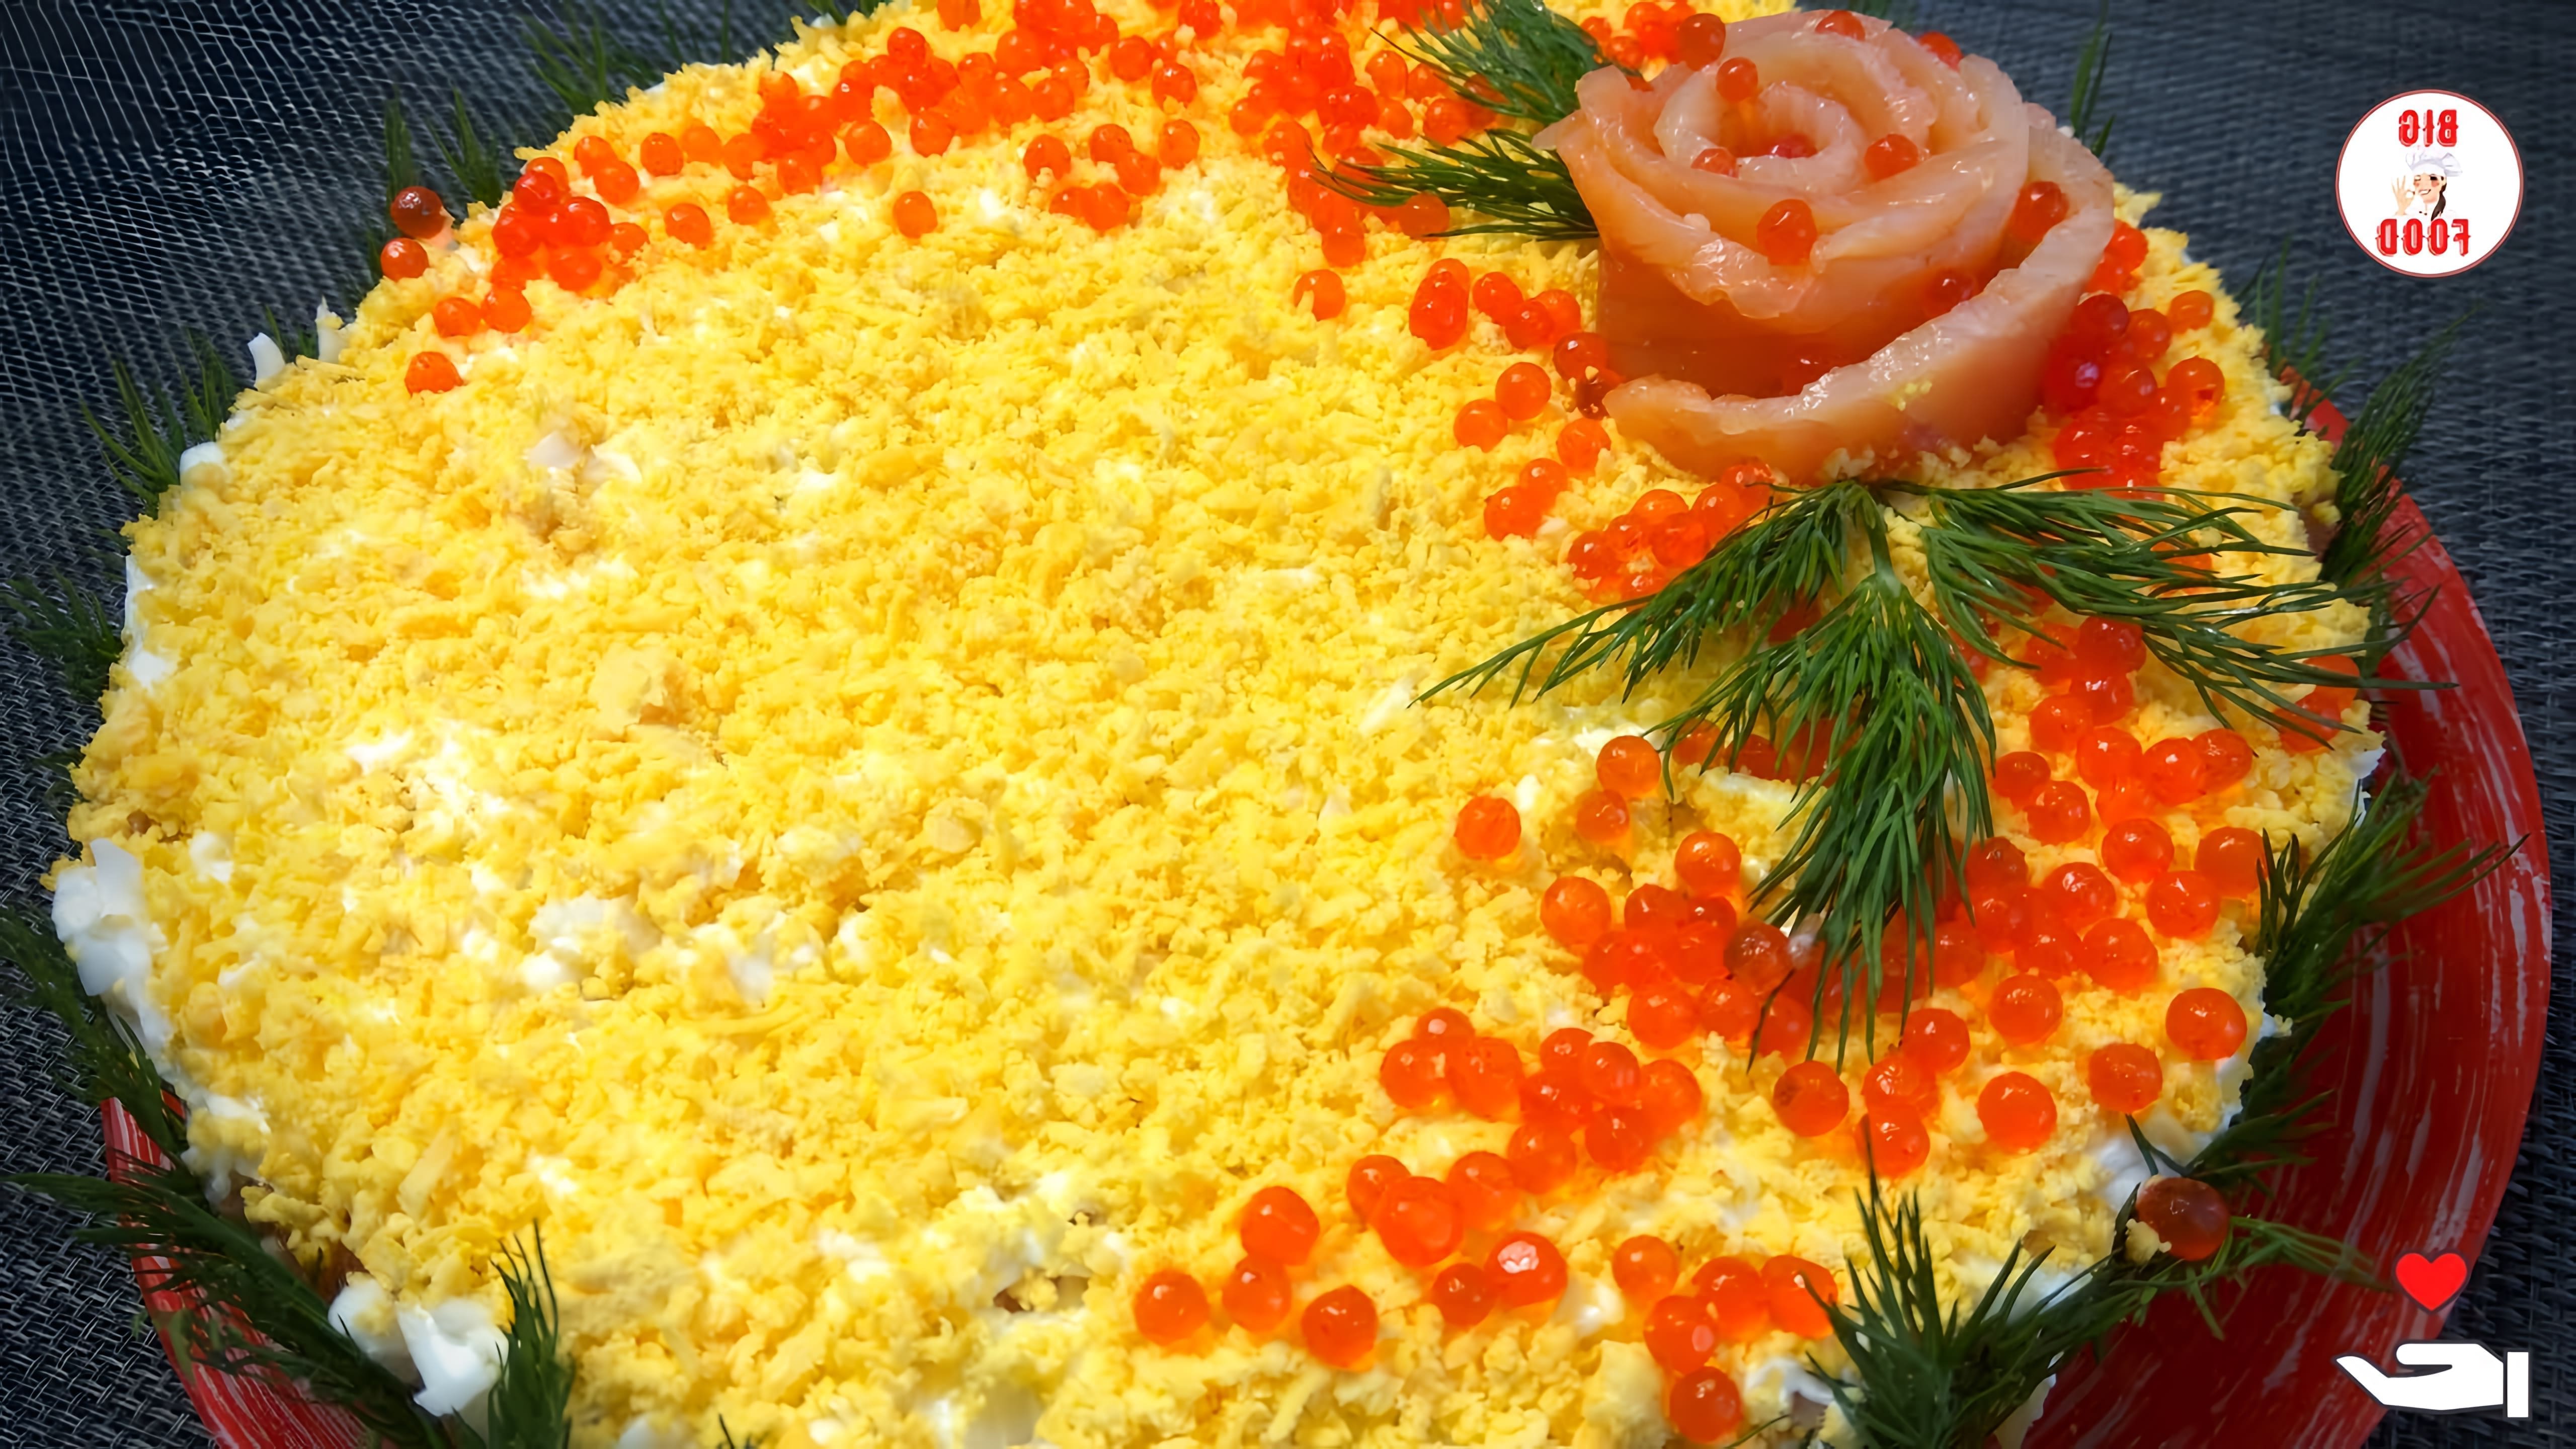 В этом видео демонстрируется рецепт приготовления царского салата с красной рыбой